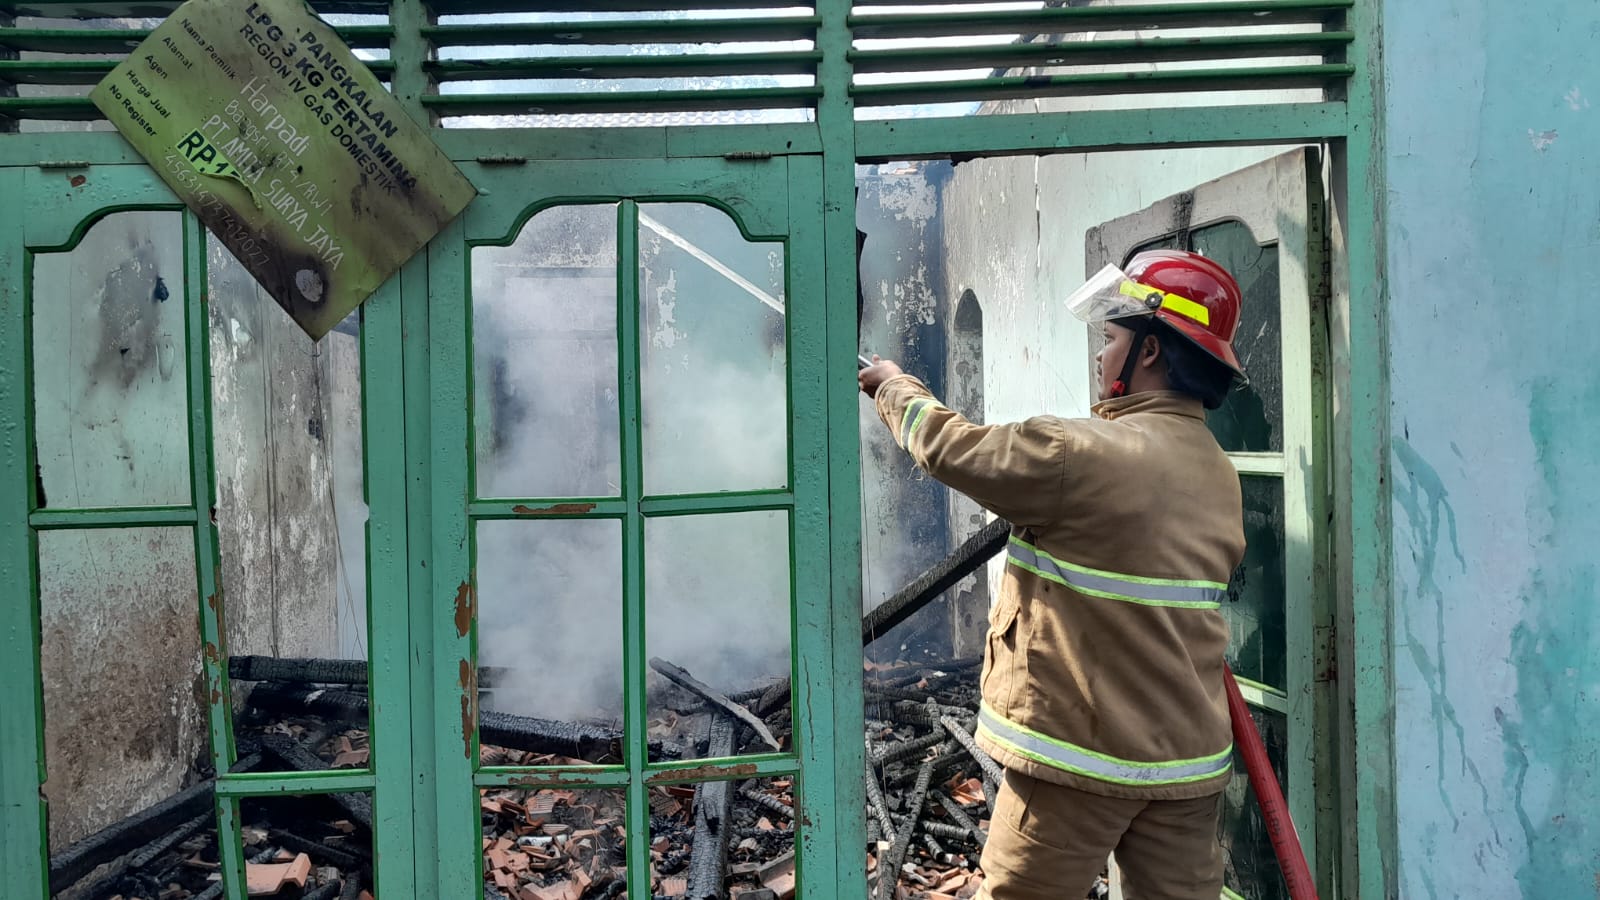 Bensin Tumpah Picu Kebakaran di Wonosobo, Kerugian Ditaksir Ratusan Juta